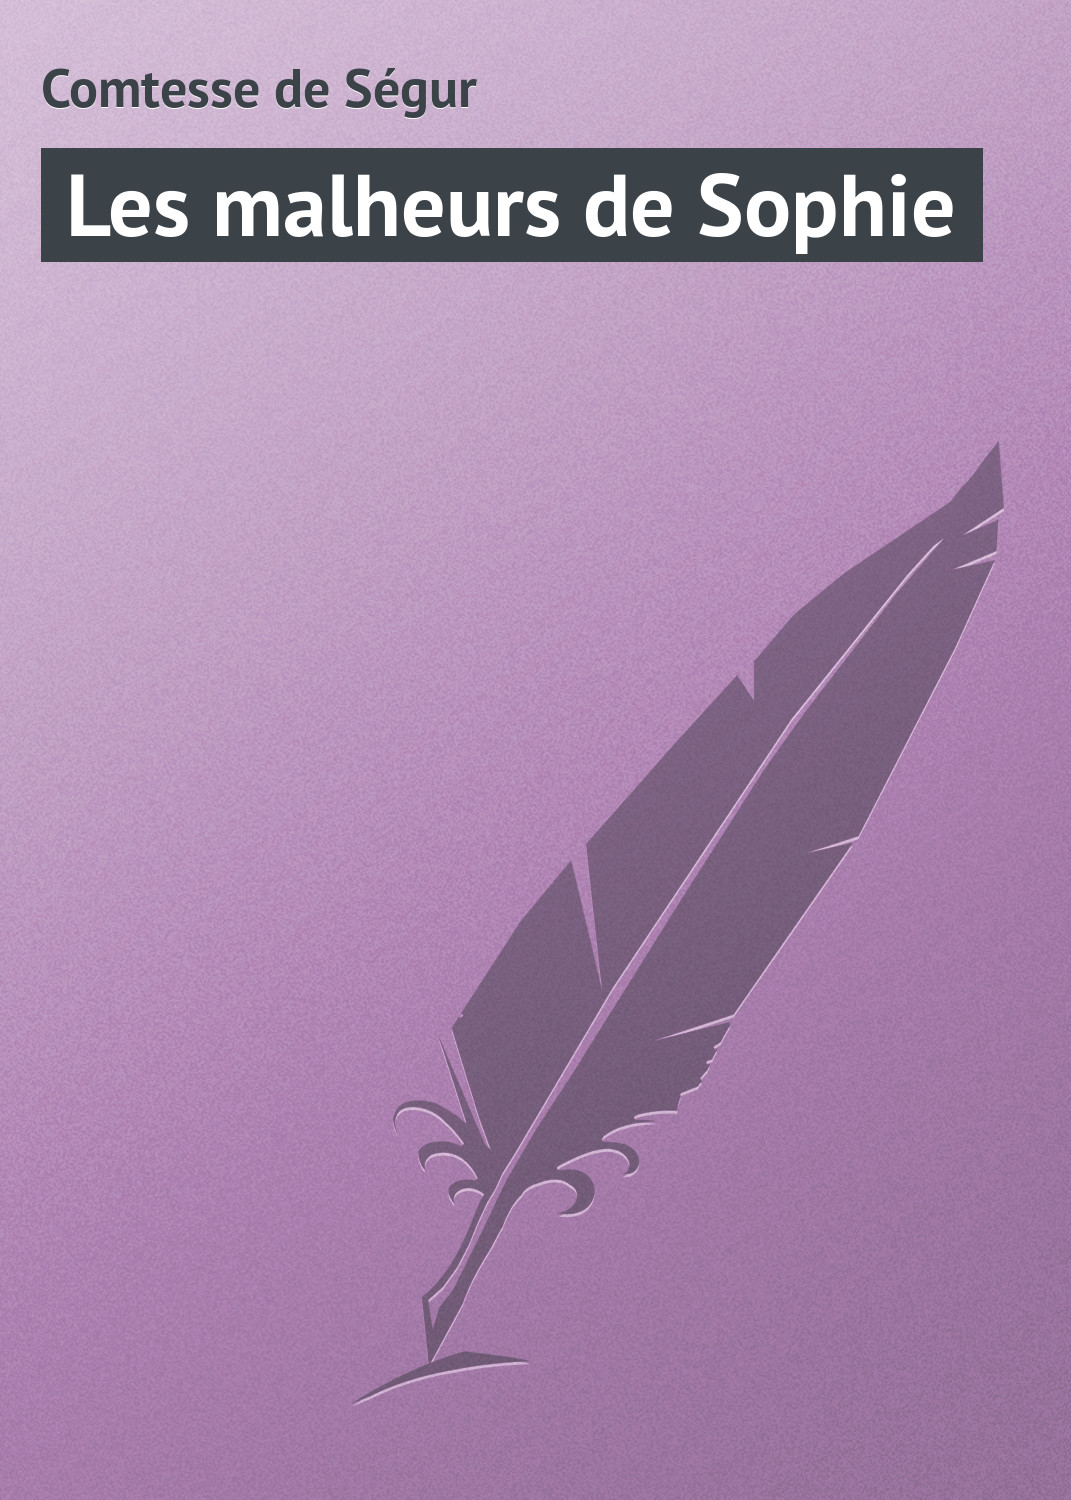 Книга Les malheurs de Sophie из серии , созданная Comtesse de, может относится к жанру Зарубежная старинная литература, Зарубежная классика. Стоимость электронной книги Les malheurs de Sophie с идентификатором 21104438 составляет 5.99 руб.